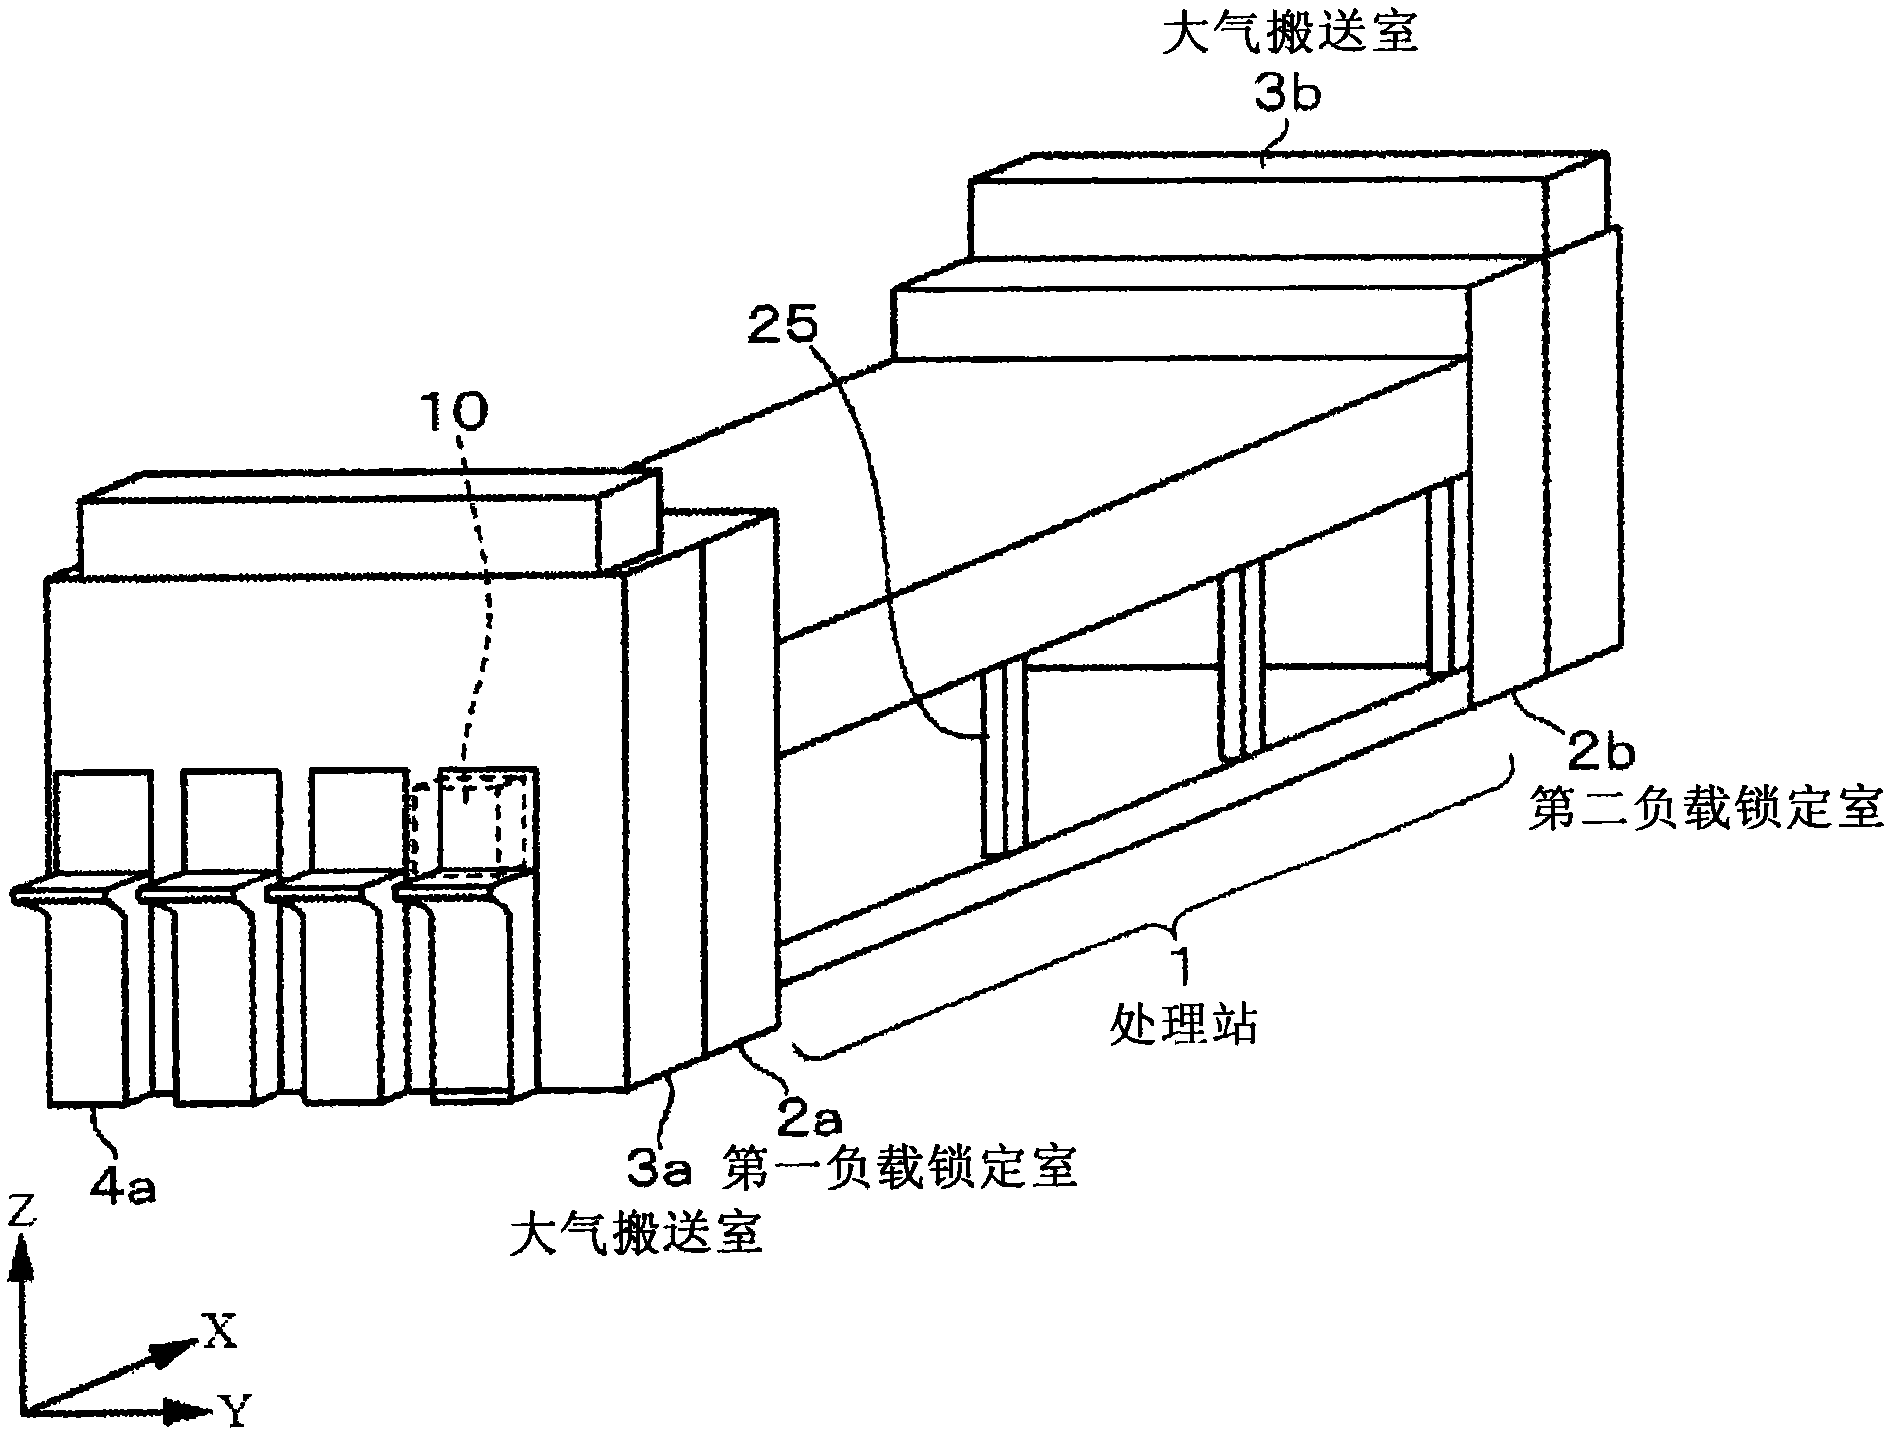 Vacuum processing apparatus